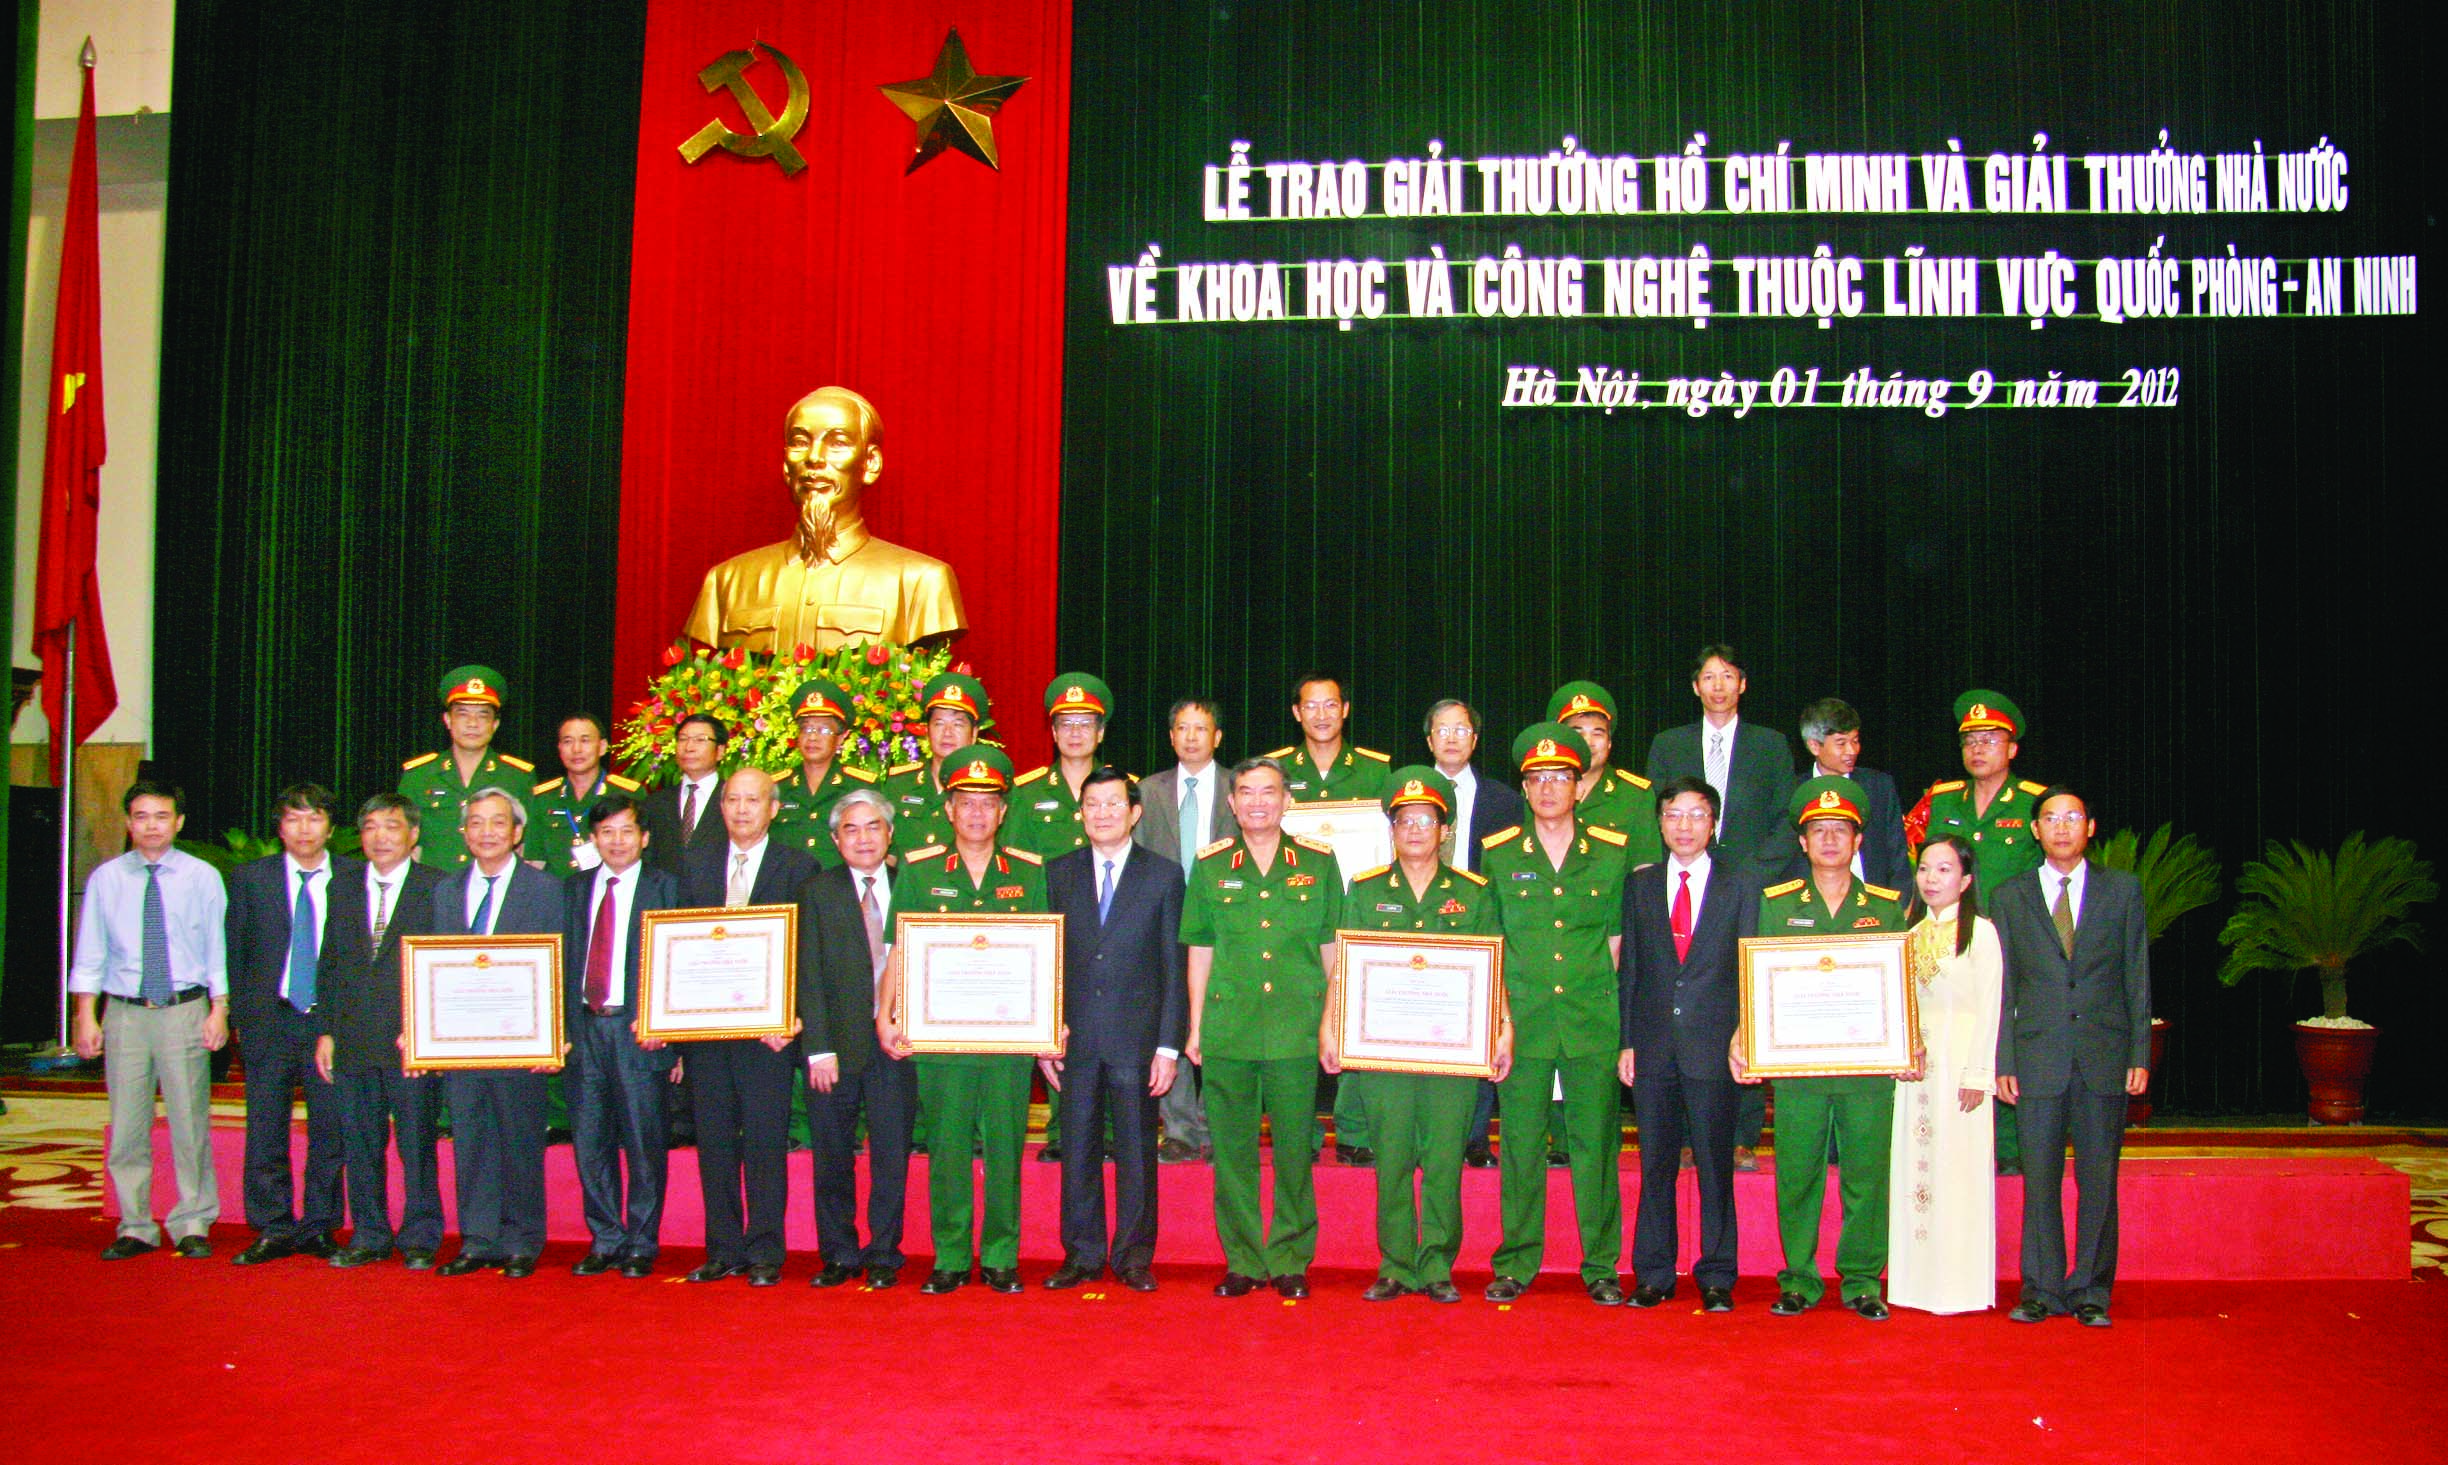 Chủ tịch nước Trương Tấn Sang chụp ảnh kỷ niệm cùng các nhà khoa học Ngành Cơ yếu được nhận giải thưởng Nhà nước về KH&CN năm 2012 (01/9/2012)